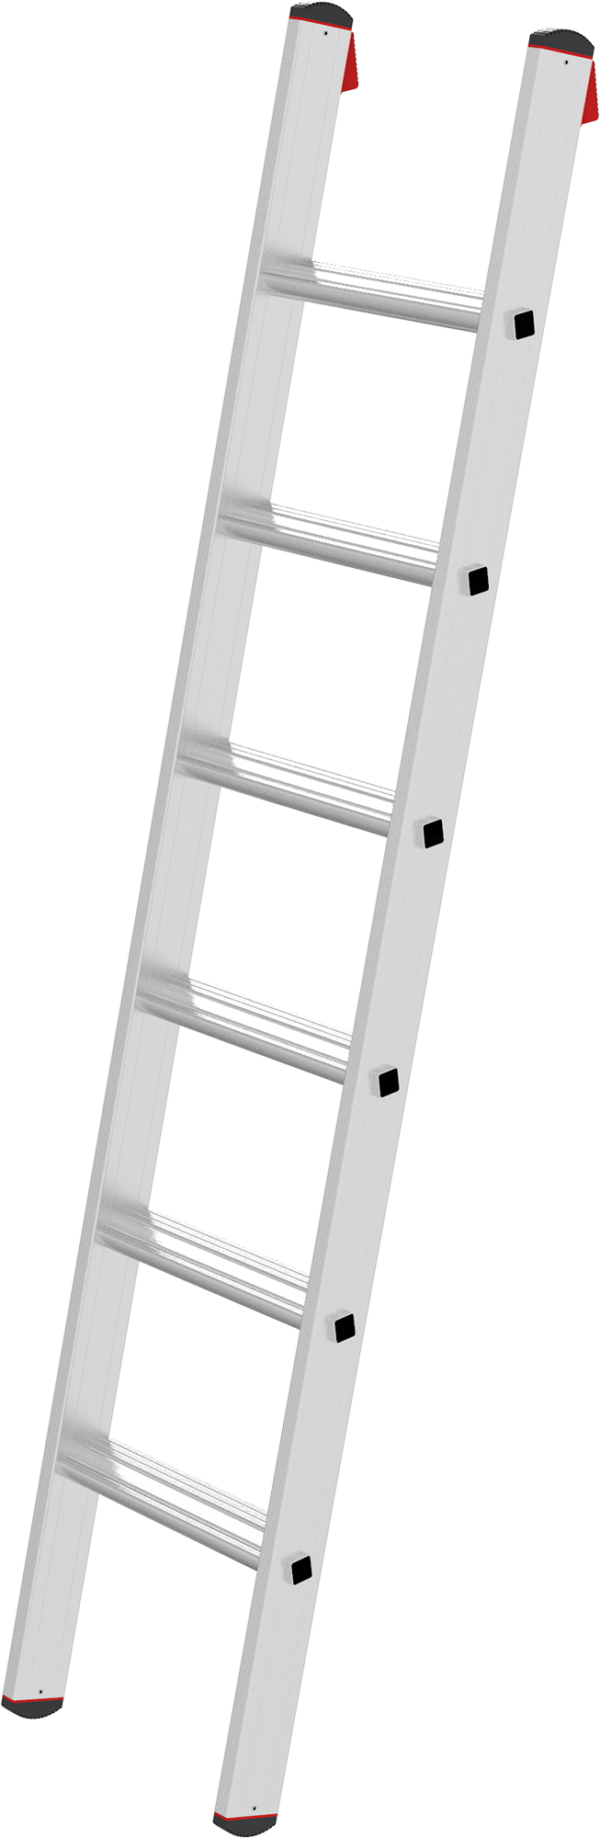 Профессиональная алюминиевая приставная лестница с развальцованными ступенями 80 мм NV3214 артикул 3214106